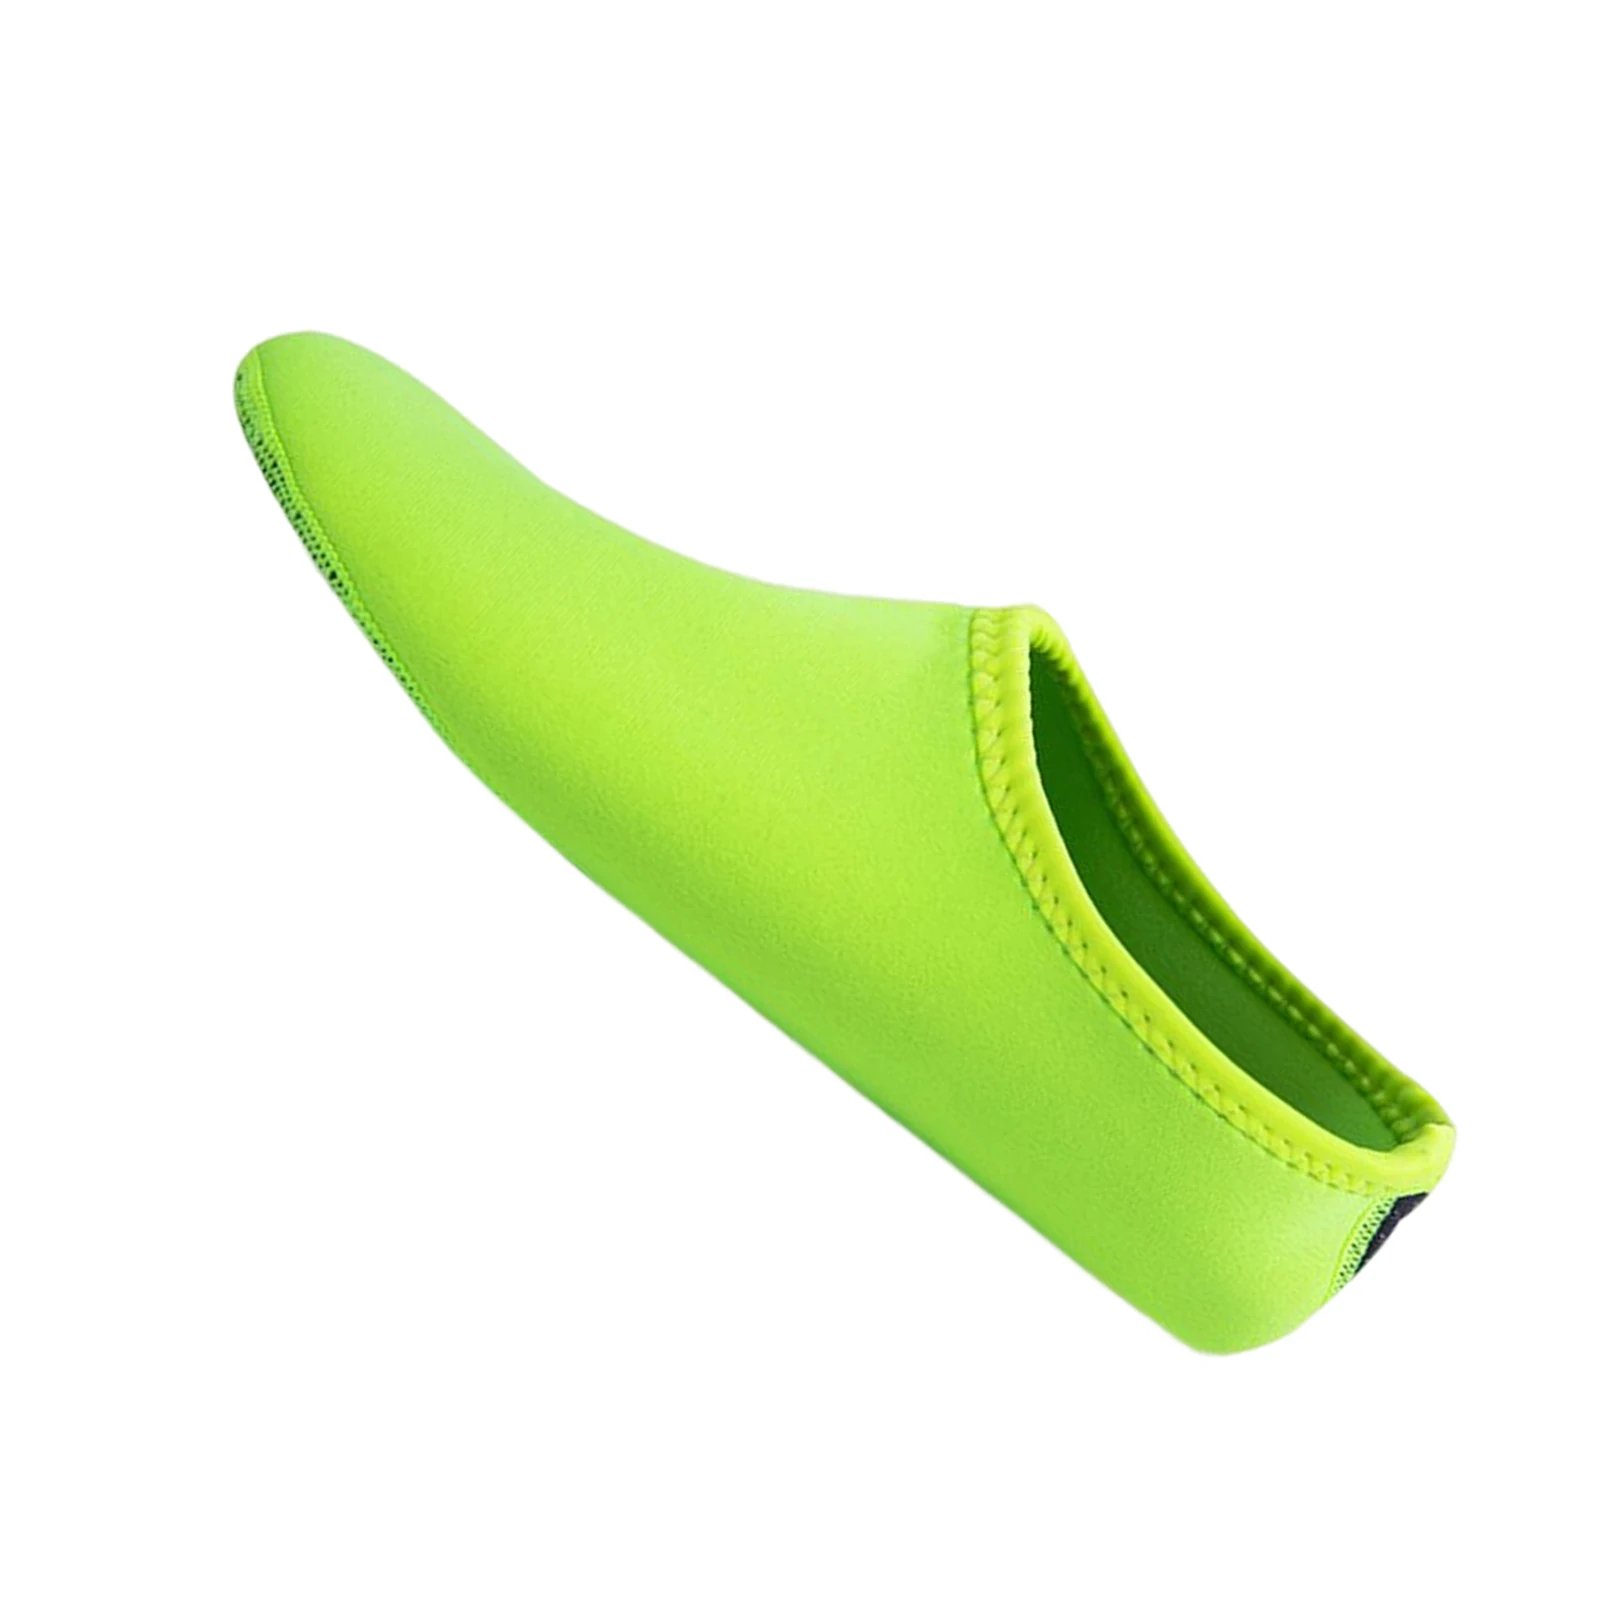 Унисекс, пляжные ботинки, носки для серфинга с гибким и воздухопроницаемым дизайном, подходящие для плавания на пляже Изображение 3